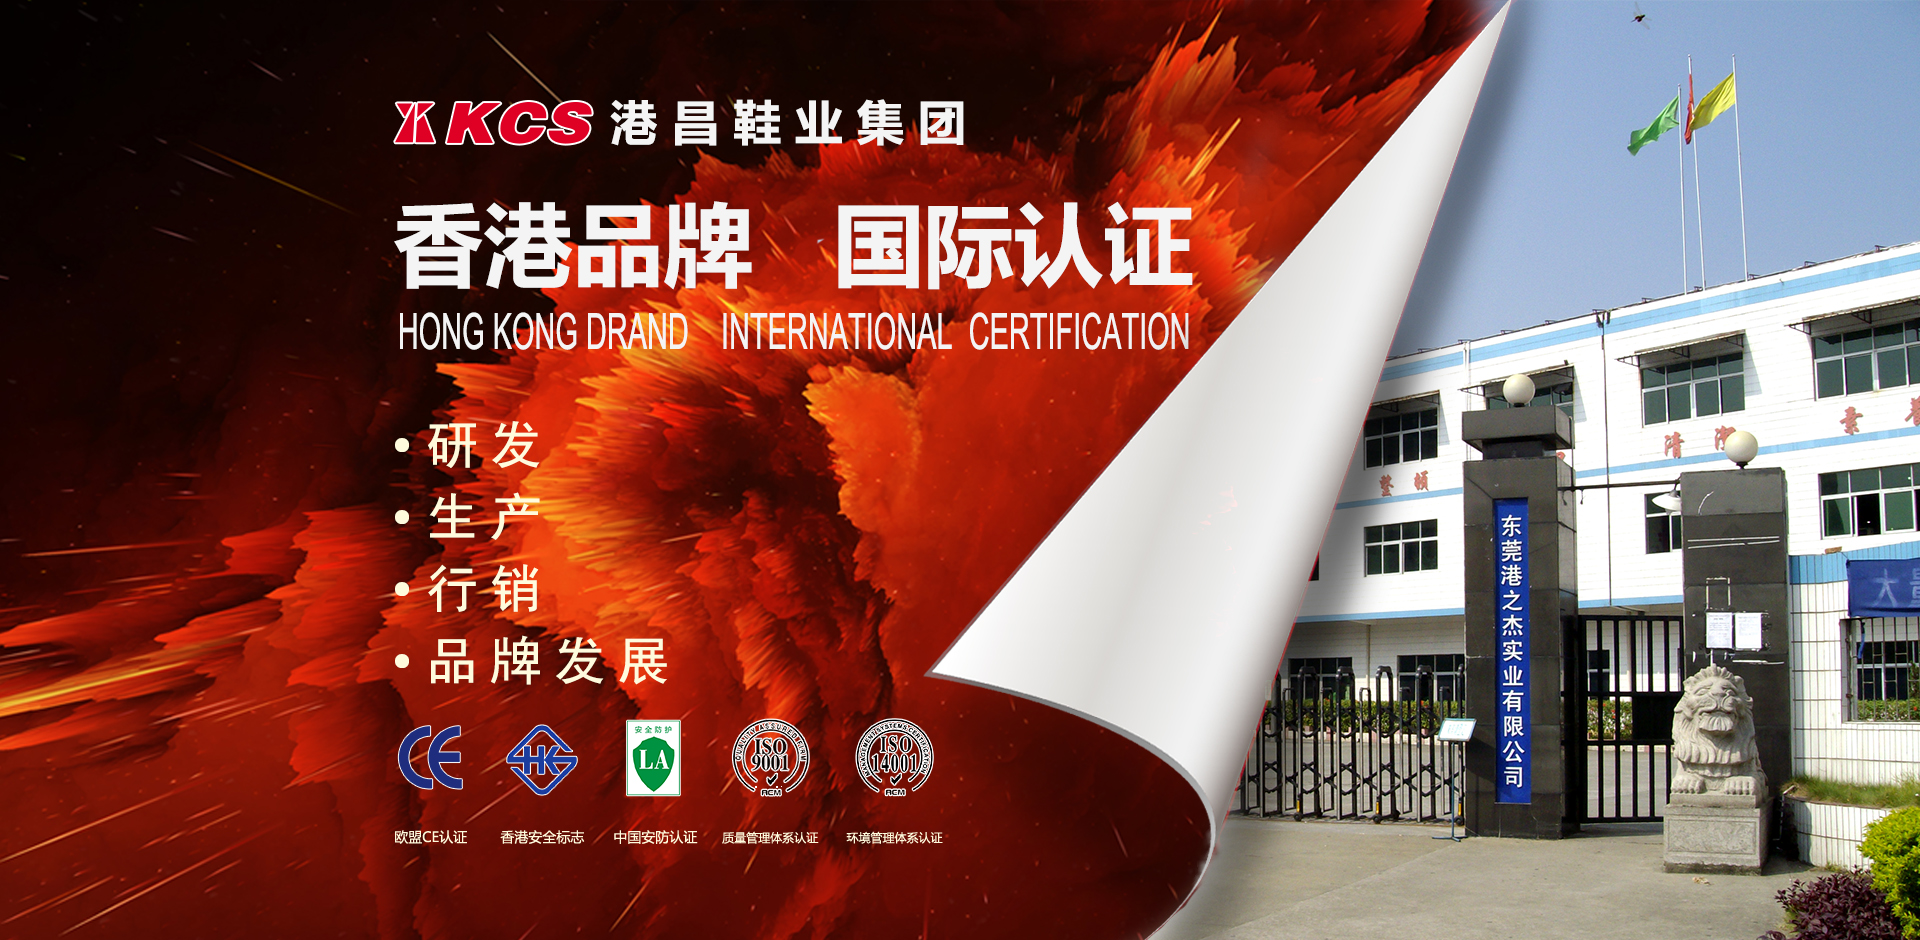 香港品牌国际认证